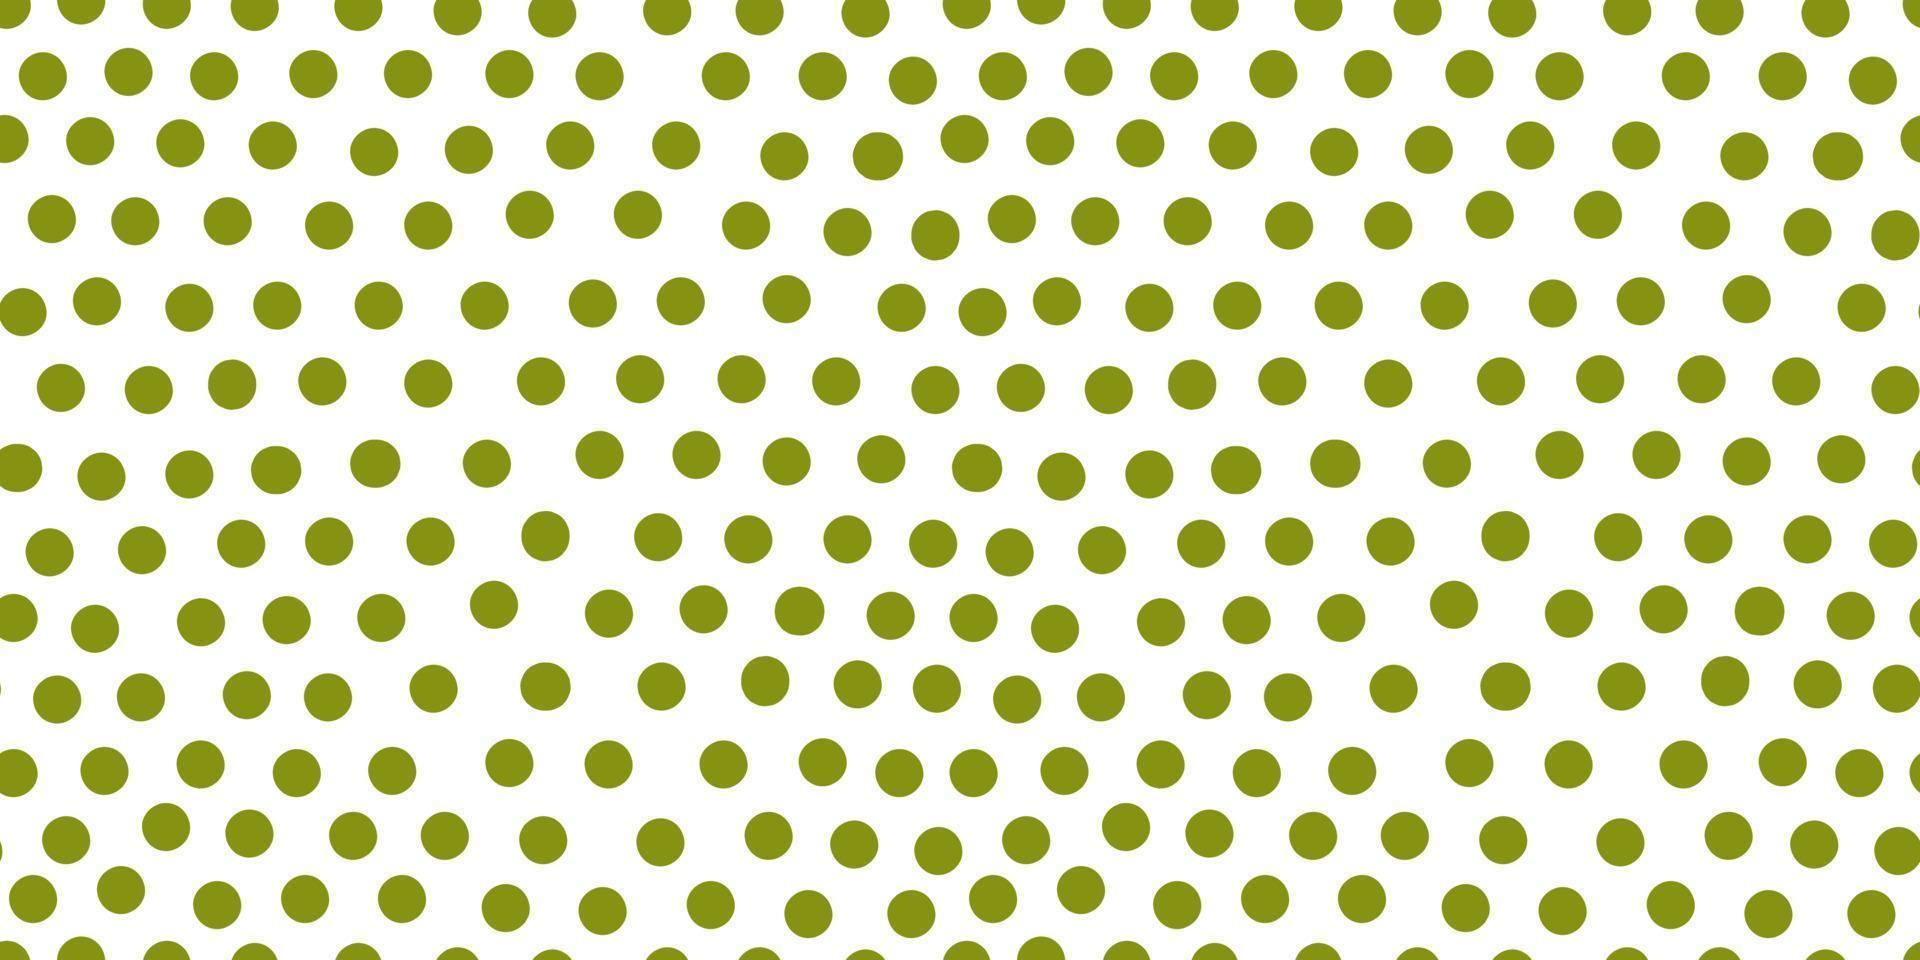 schattig polka dot naadloos patroon. hand getekend groene cirkel vormen behang. vector